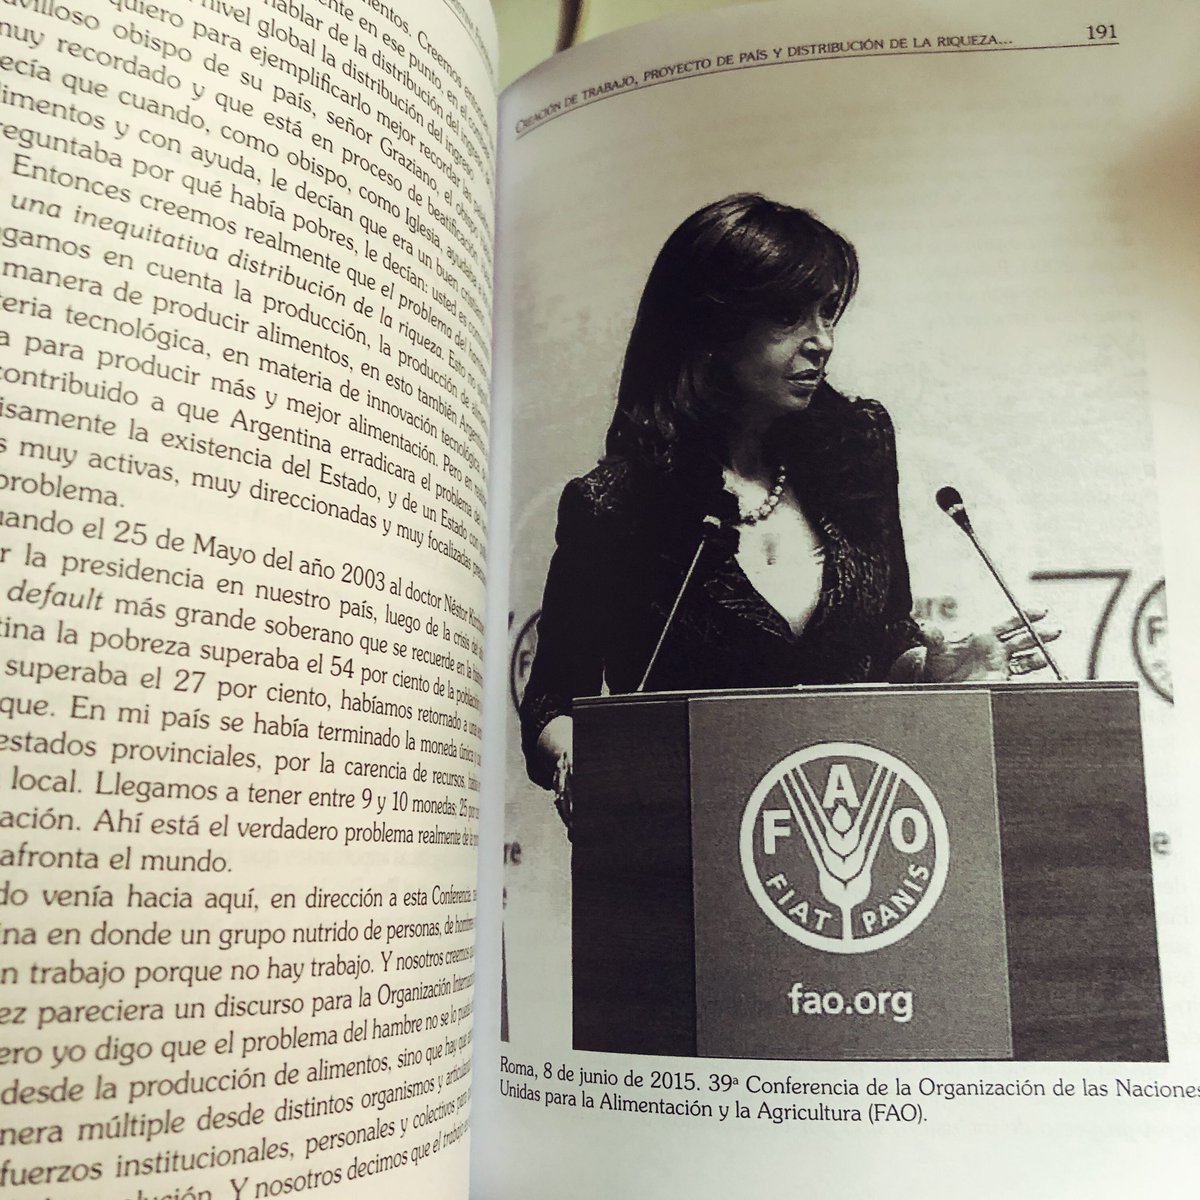 Presentación del libro de Cristina “Una política exterior soberana”. 🇦🇷